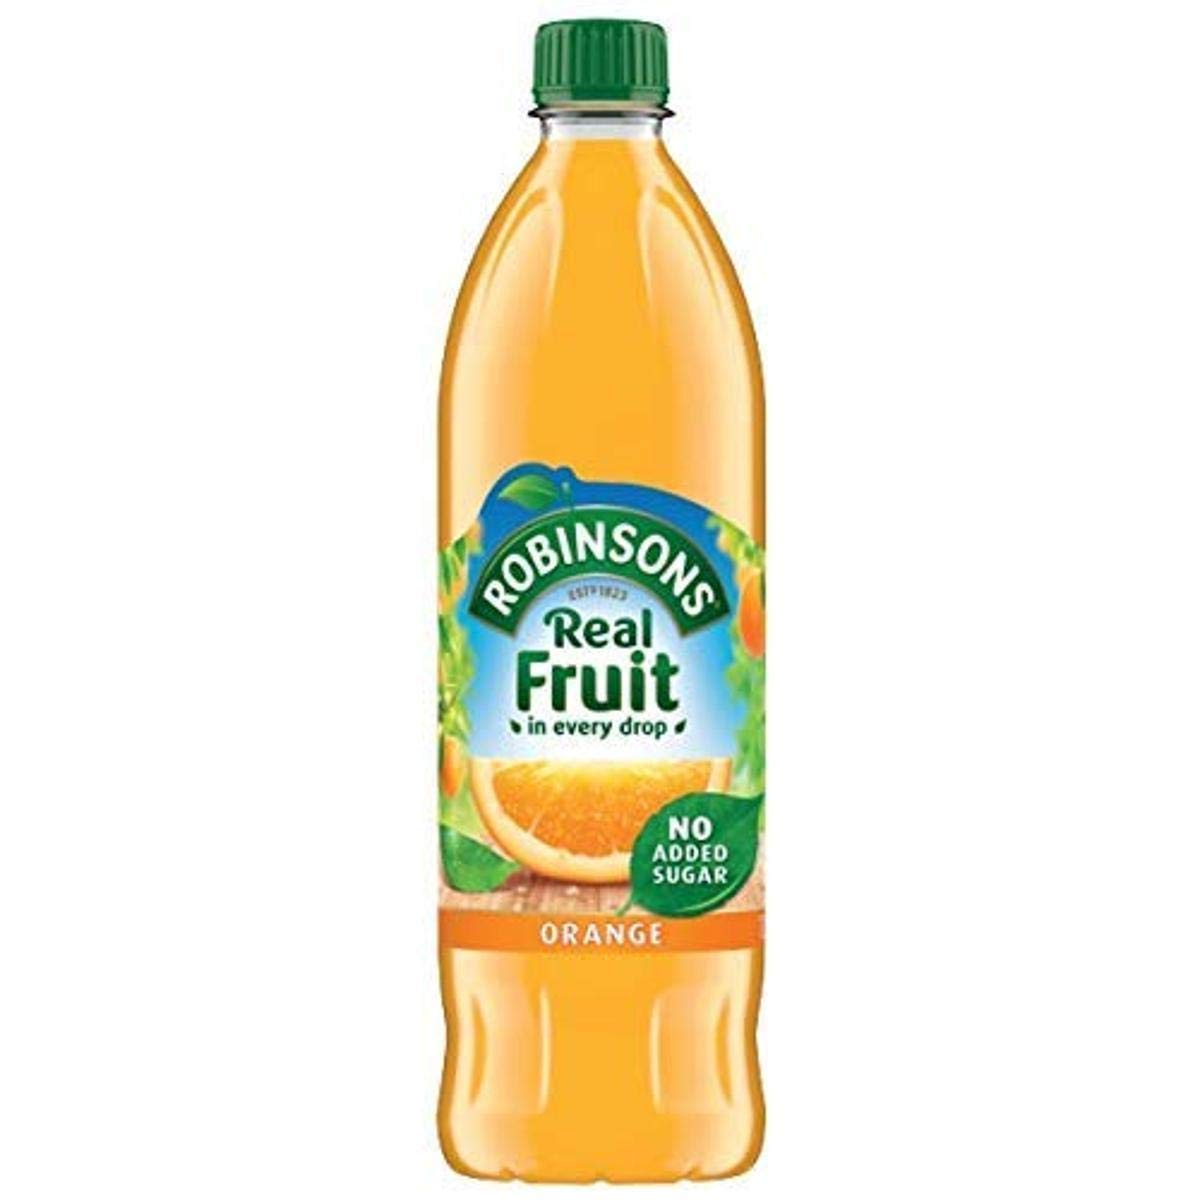 Robinson's Orange Fruit Drink, No Added Sugar, 1L Plastic Bottle (Pack of 6)